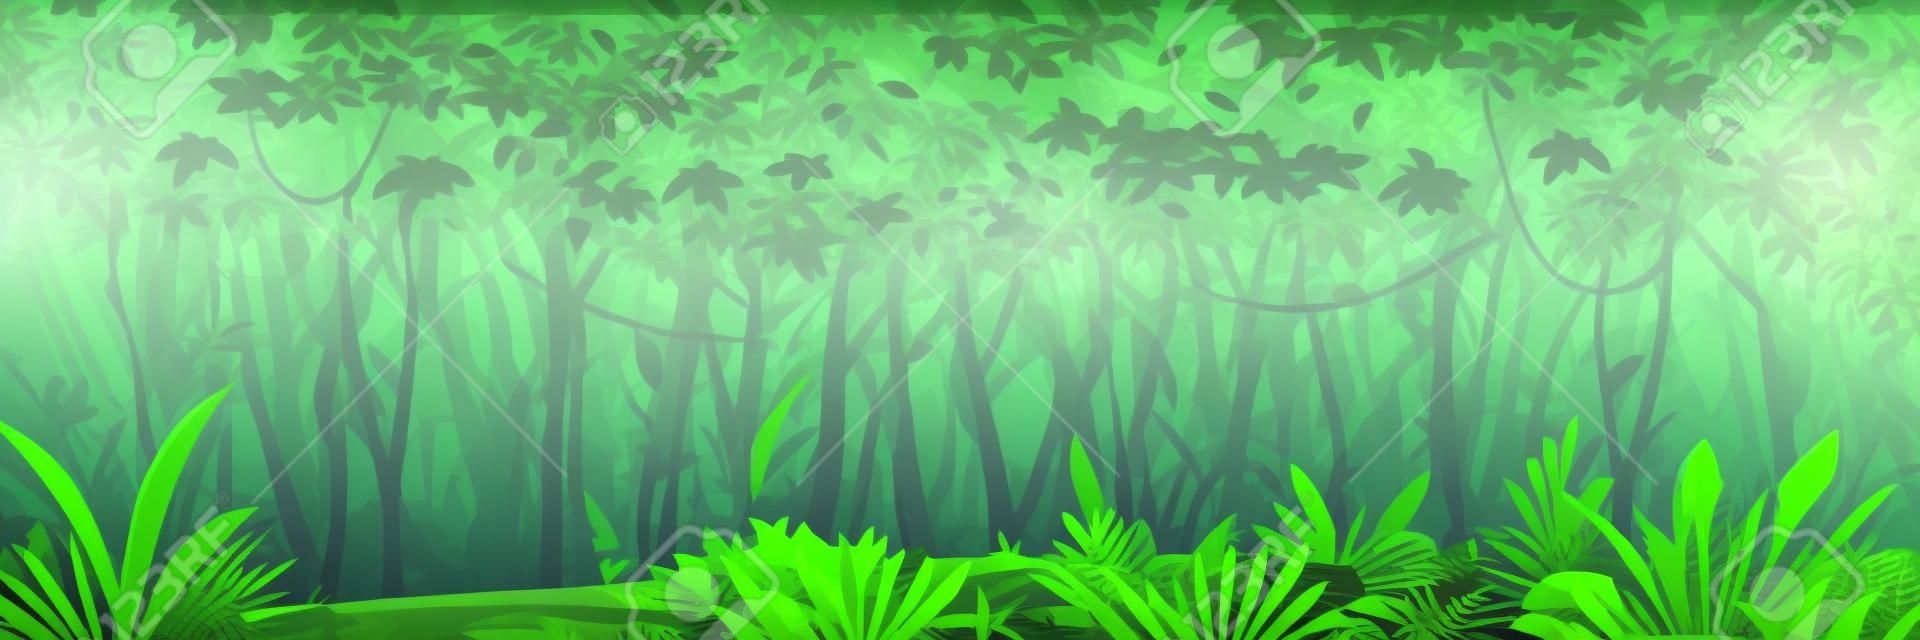 Wilder nasser dunkler Dschungelwald mit Bäumen, Büschen und Lianen, Naturlandschaft mit grünem Dschungellaub und exotischen Pflanzen, die auf dem Boden wachsen, horizontales Banner mit tropischen Pflanzen an sonnigen Tagen